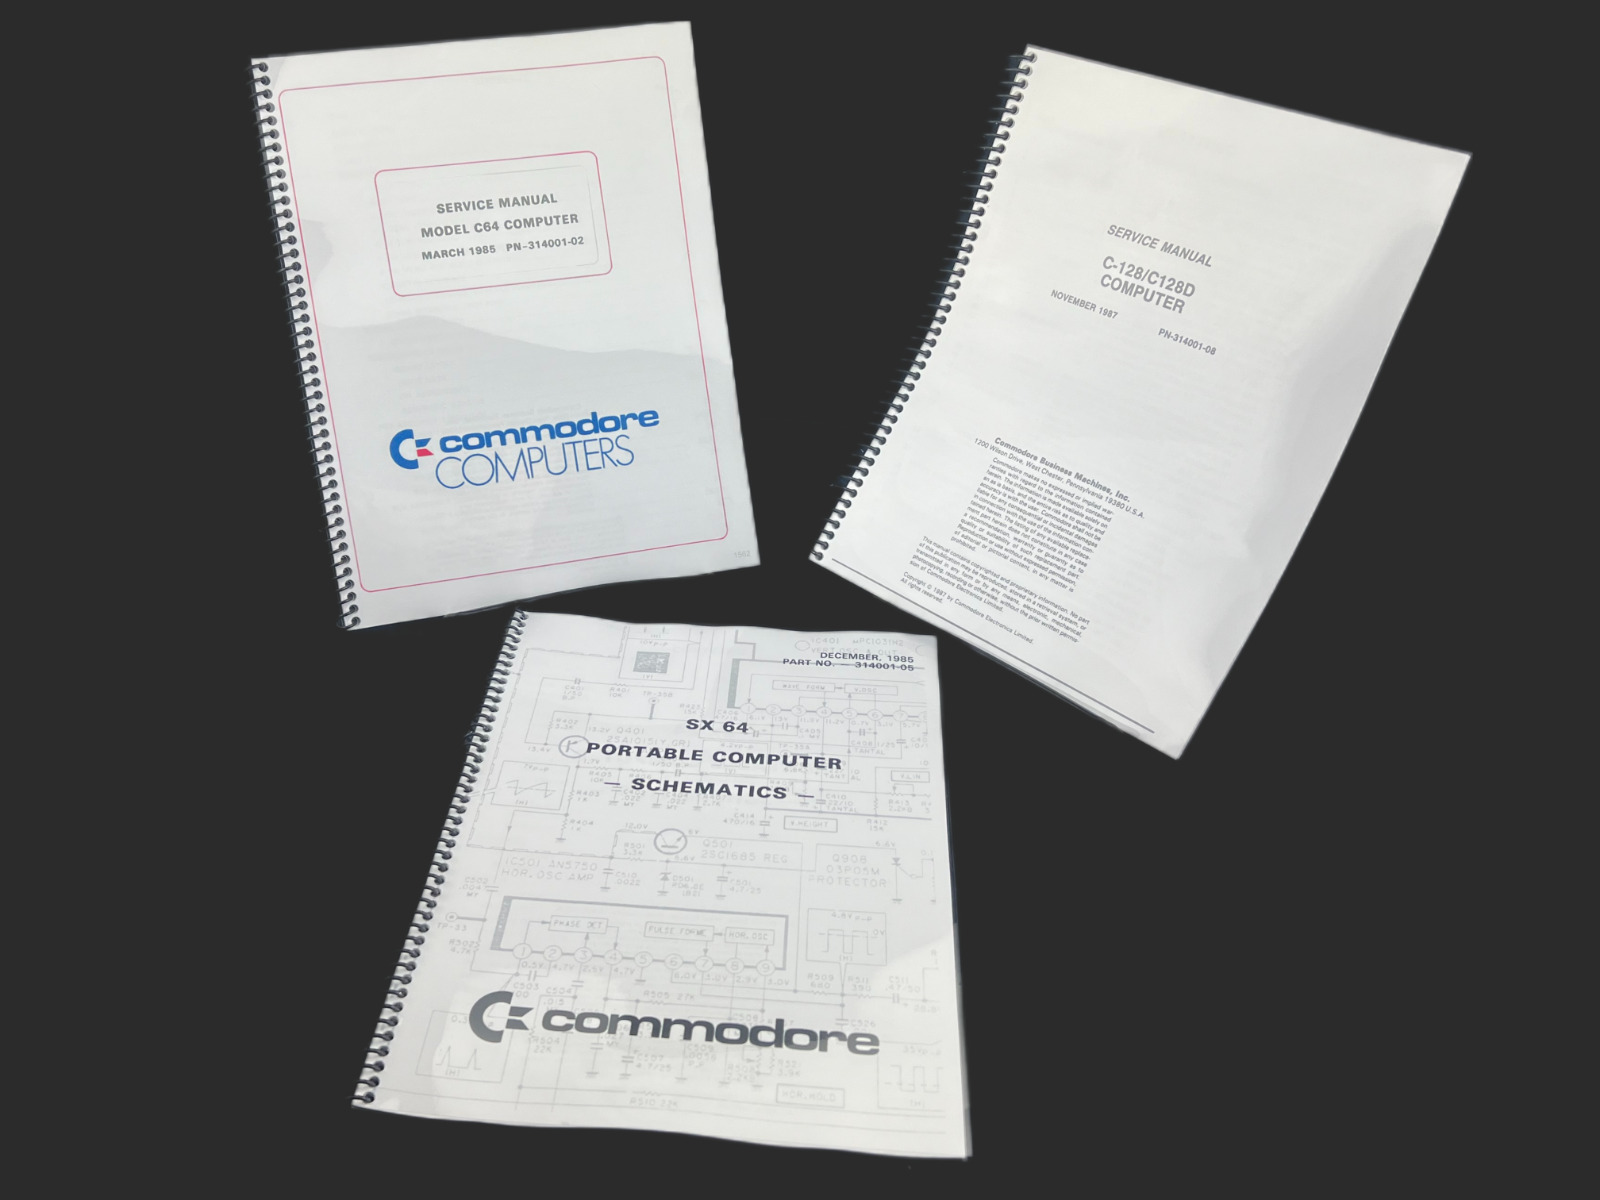 Commodore C 64 Service & Diagnostic & SX 64 Schematics & C 128D Service Bundle